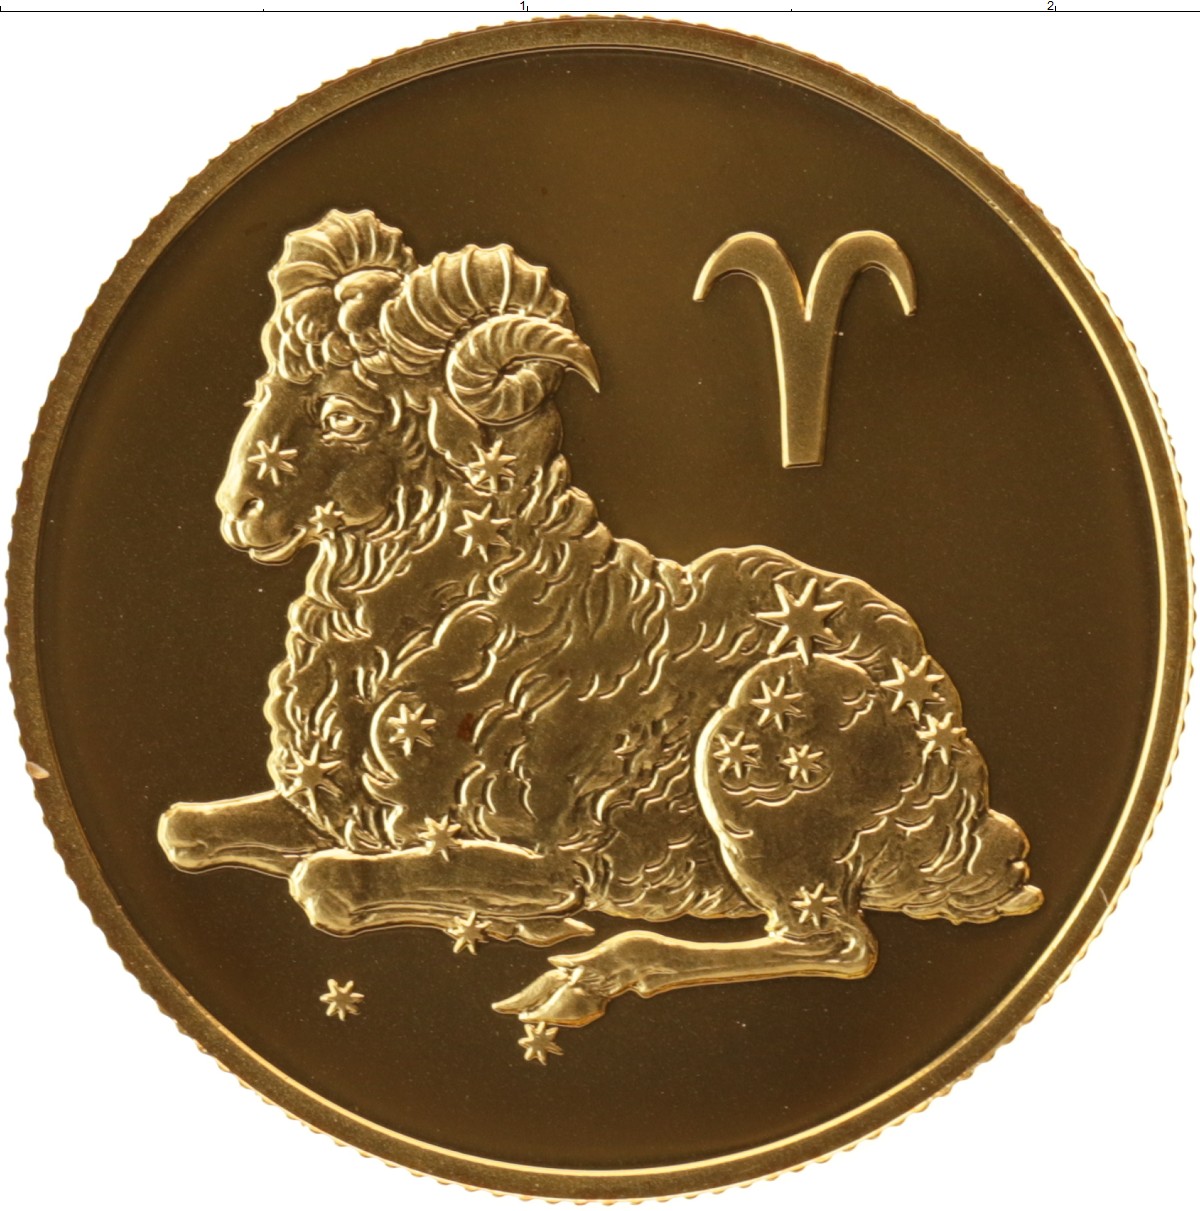 Монеты со знаком. Монета знак зодиака Овен. Золотая монета Овен. Монета со знаком зодиака. Монеты знаки зодиака золото.